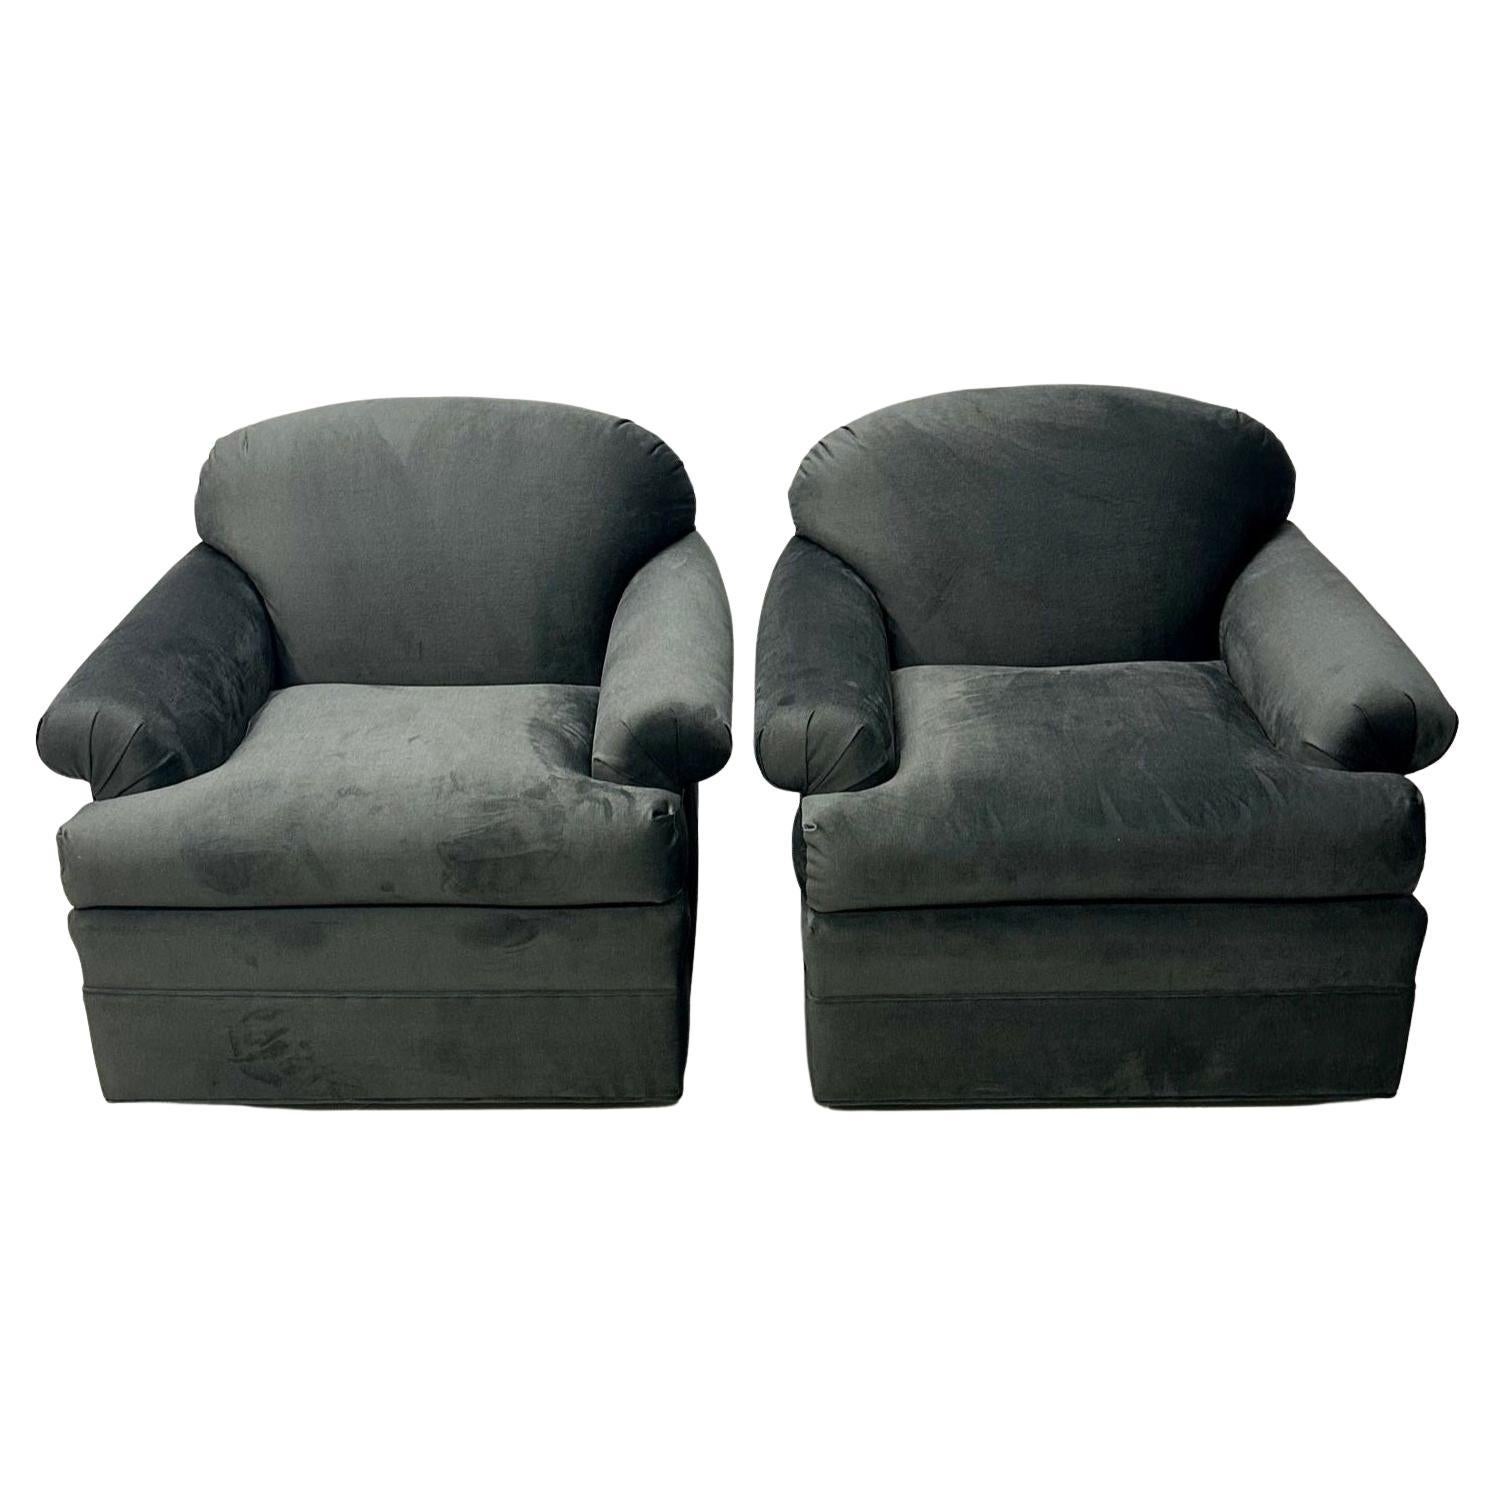 Paar graue Dreh-/Lounge-Stühle der amerikanischen Modernität, mit Rollenarm